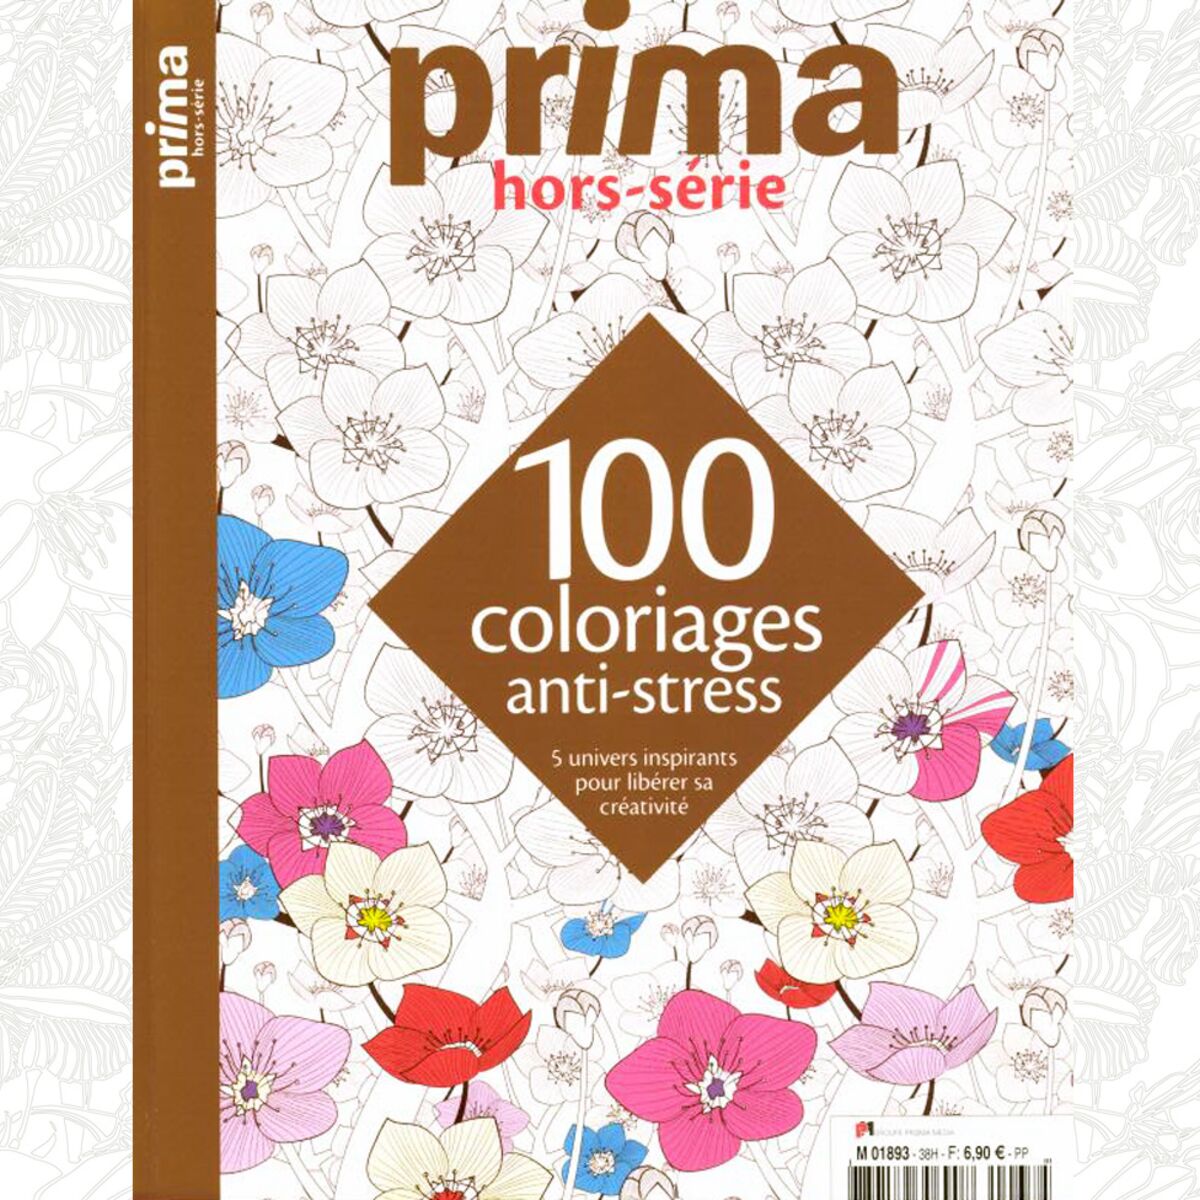 Sortie Du Prima Hors Serie 100 Coloriages Anti Stress Femme Actuelle Le Mag